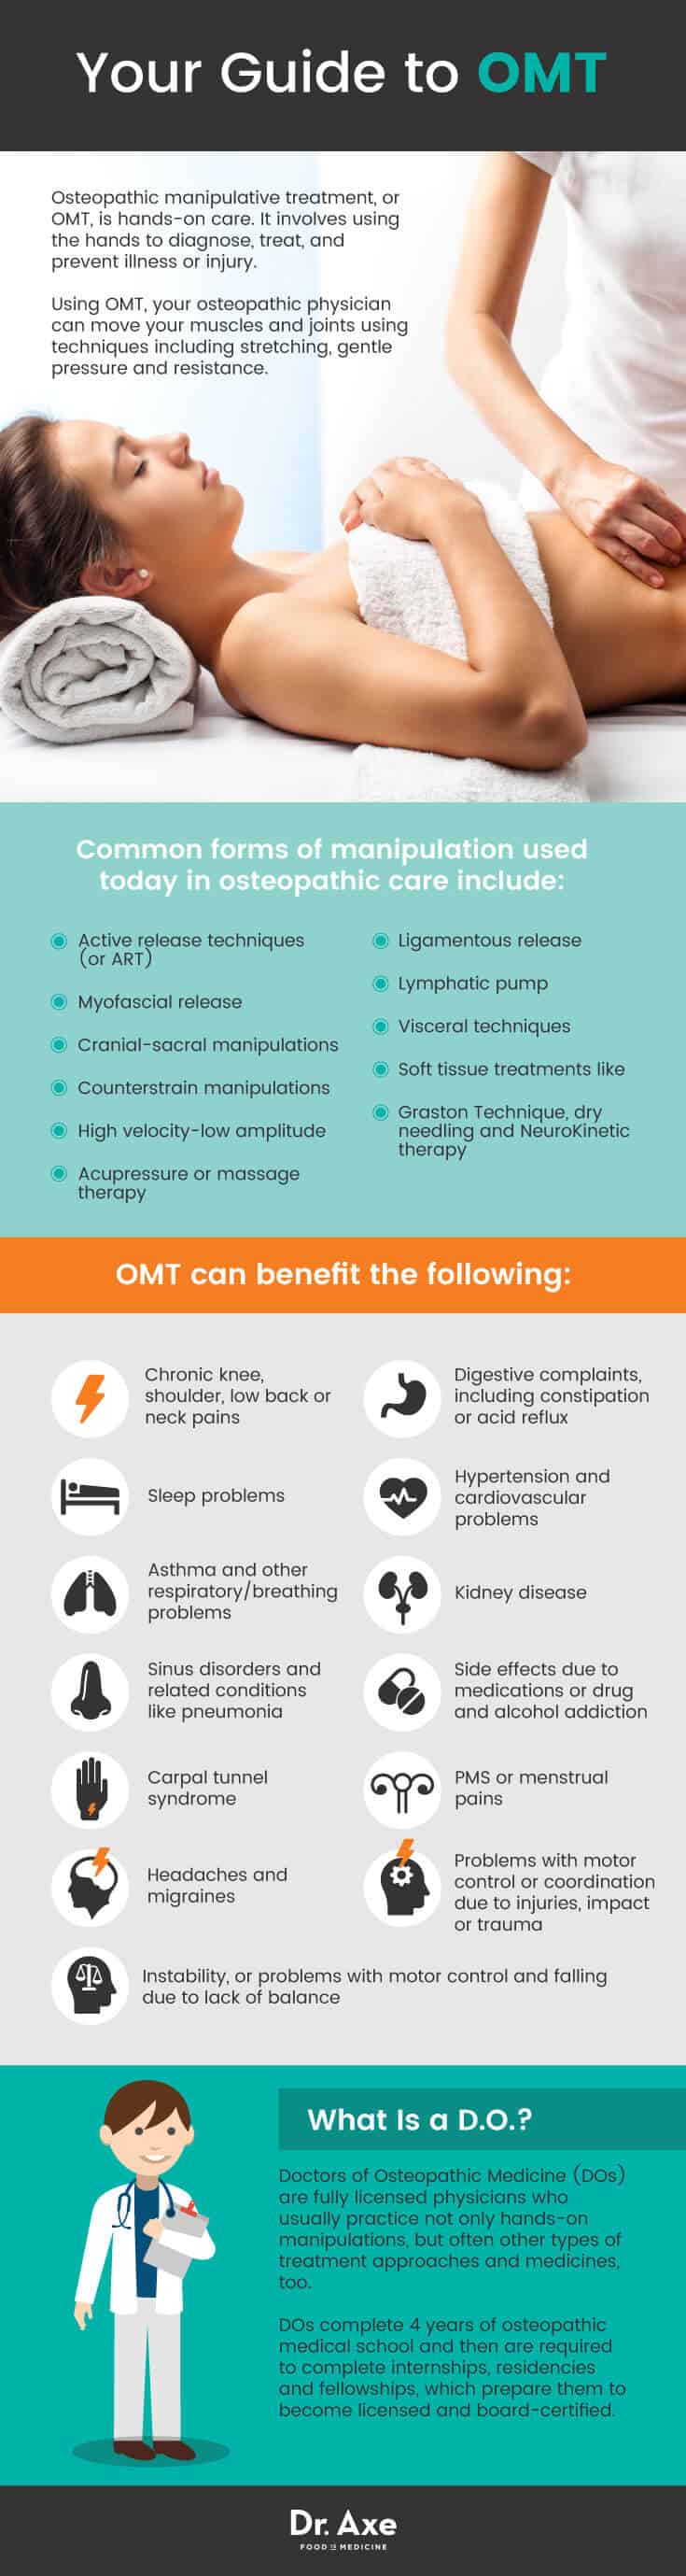 Guide de l'OMT - Dr Axe